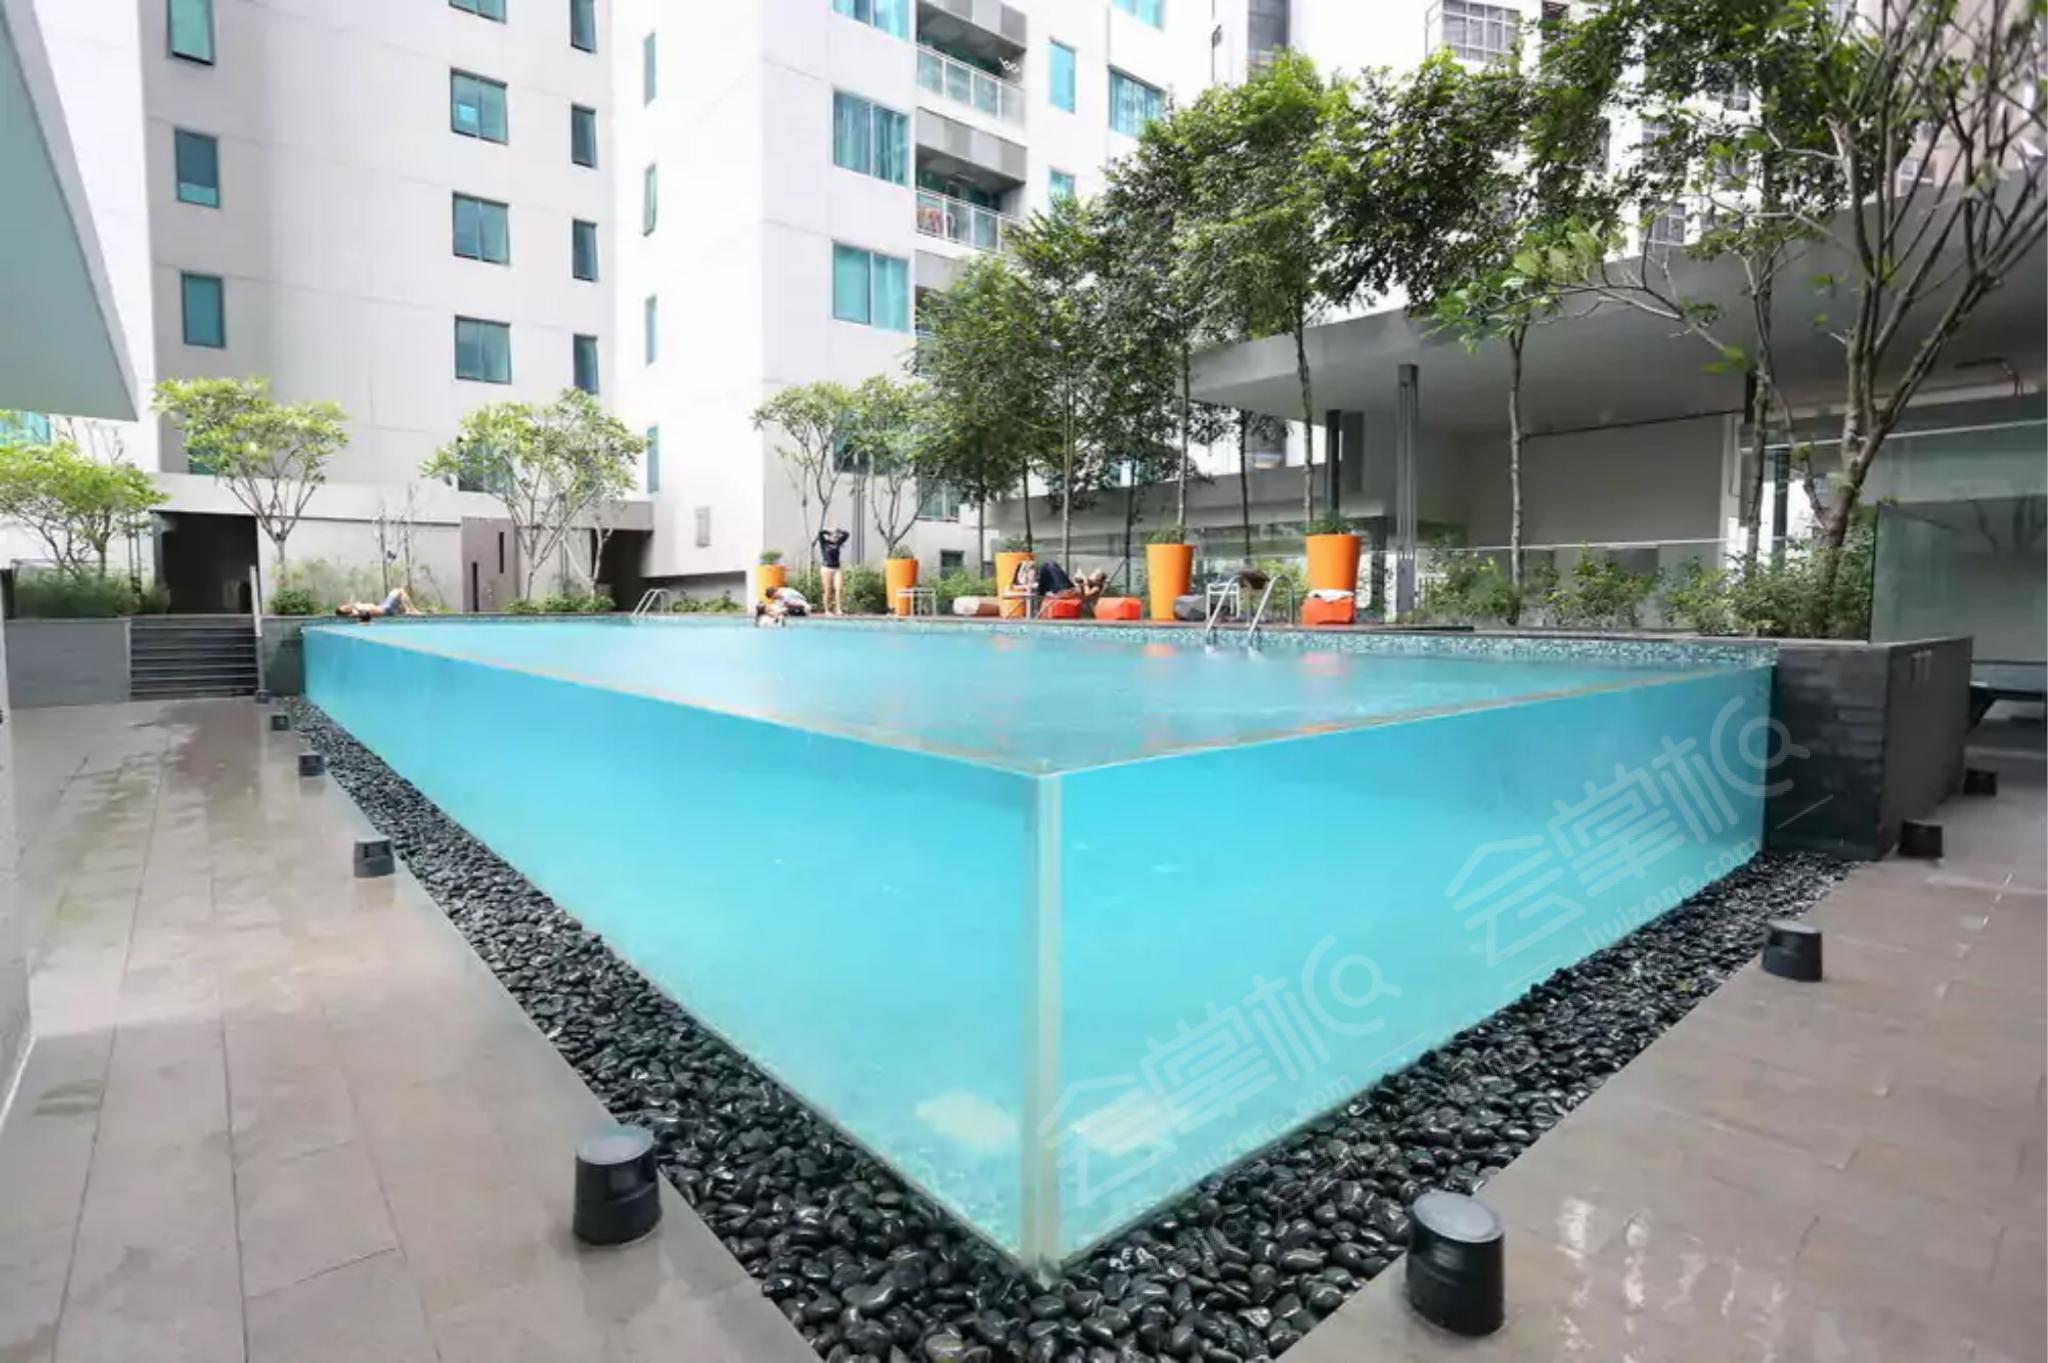 吉隆坡四星级酒店最大容纳200人的会议场地|夏日套房公寓(Summer Suites Studios)的价格与联系方式